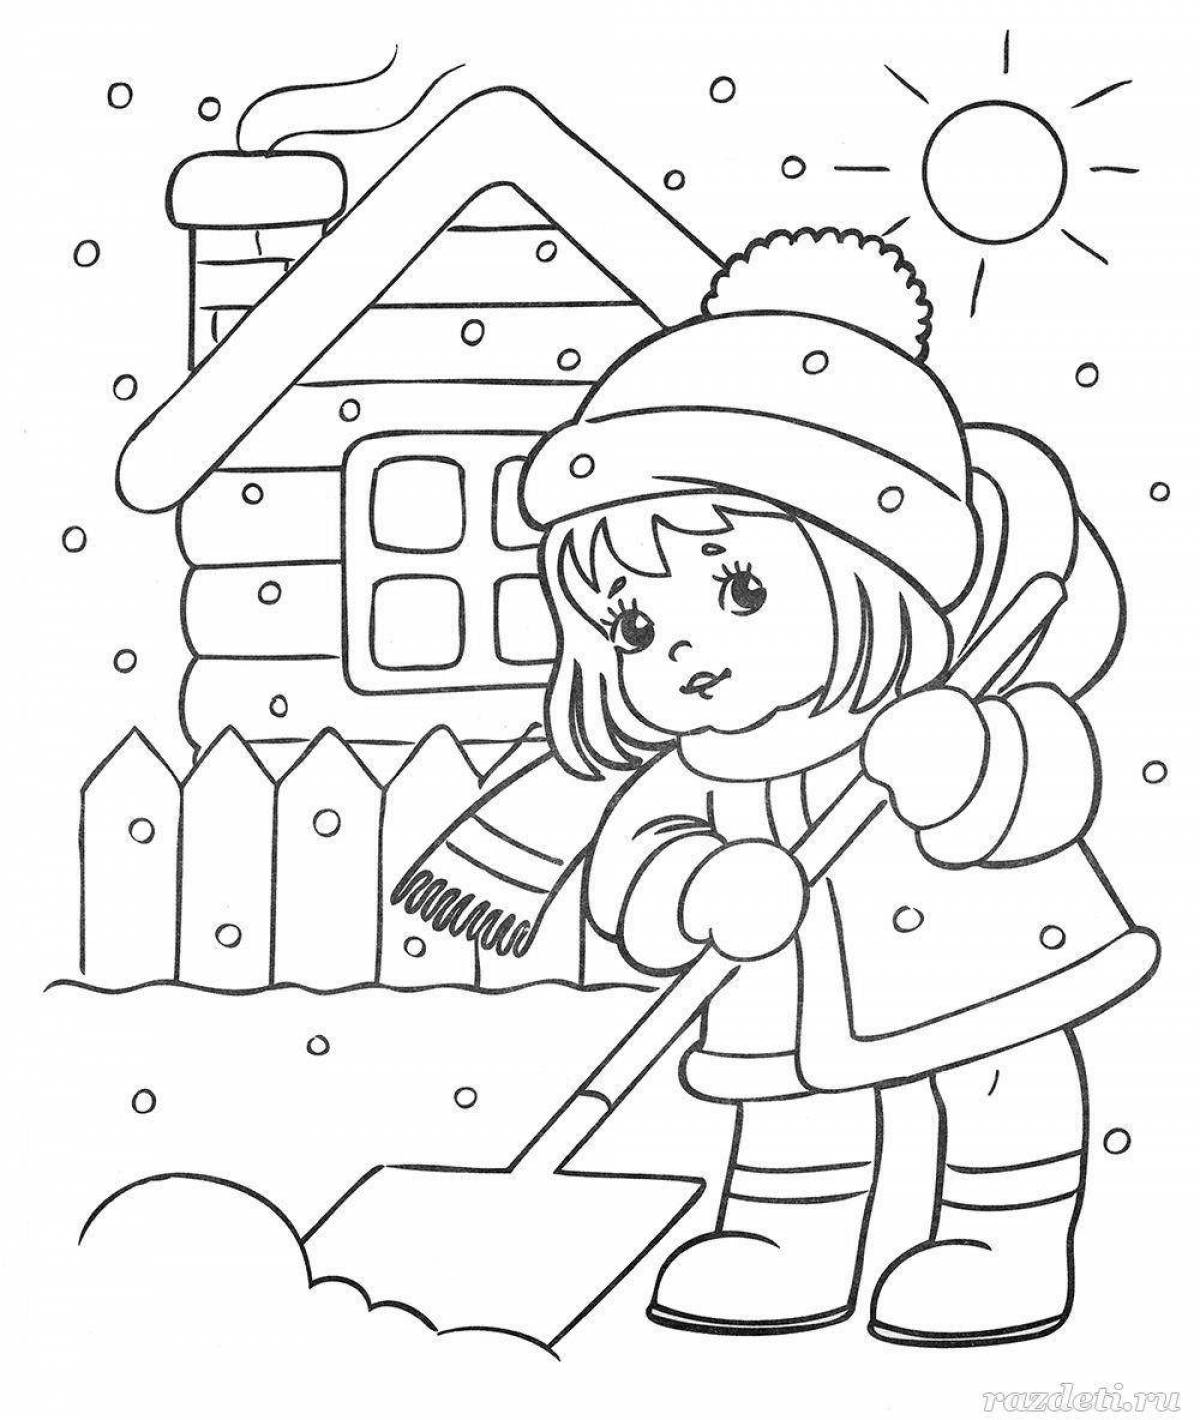 Яркие раскраски зима для детей 5 лет